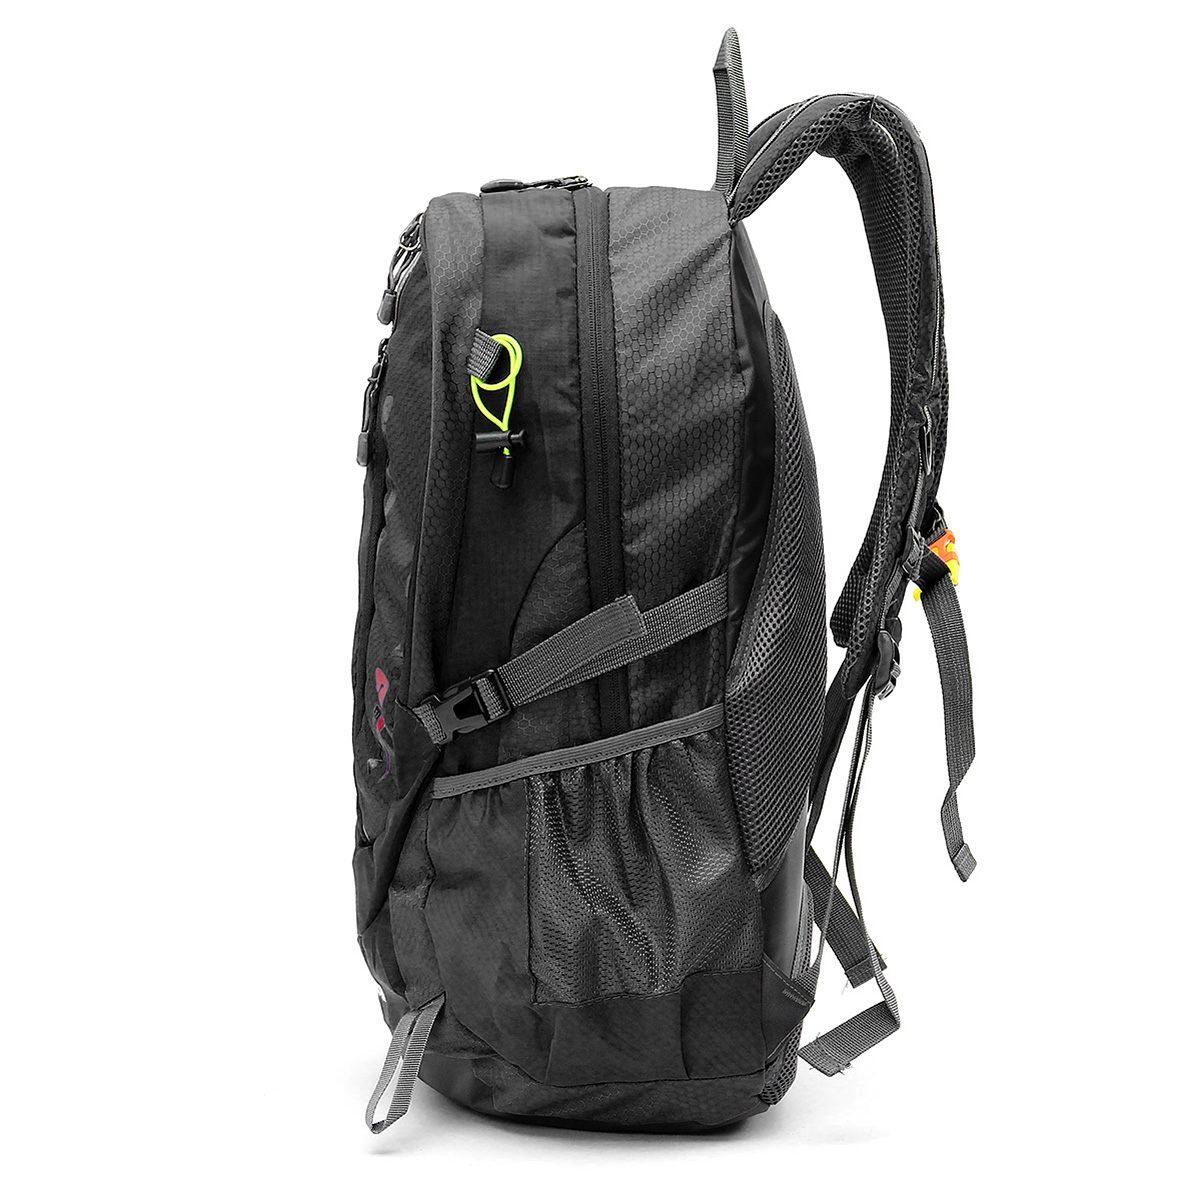 Mountaineering bag outdoor travel backpack male hiking bag student bag shoulder bag 2021 new backpack